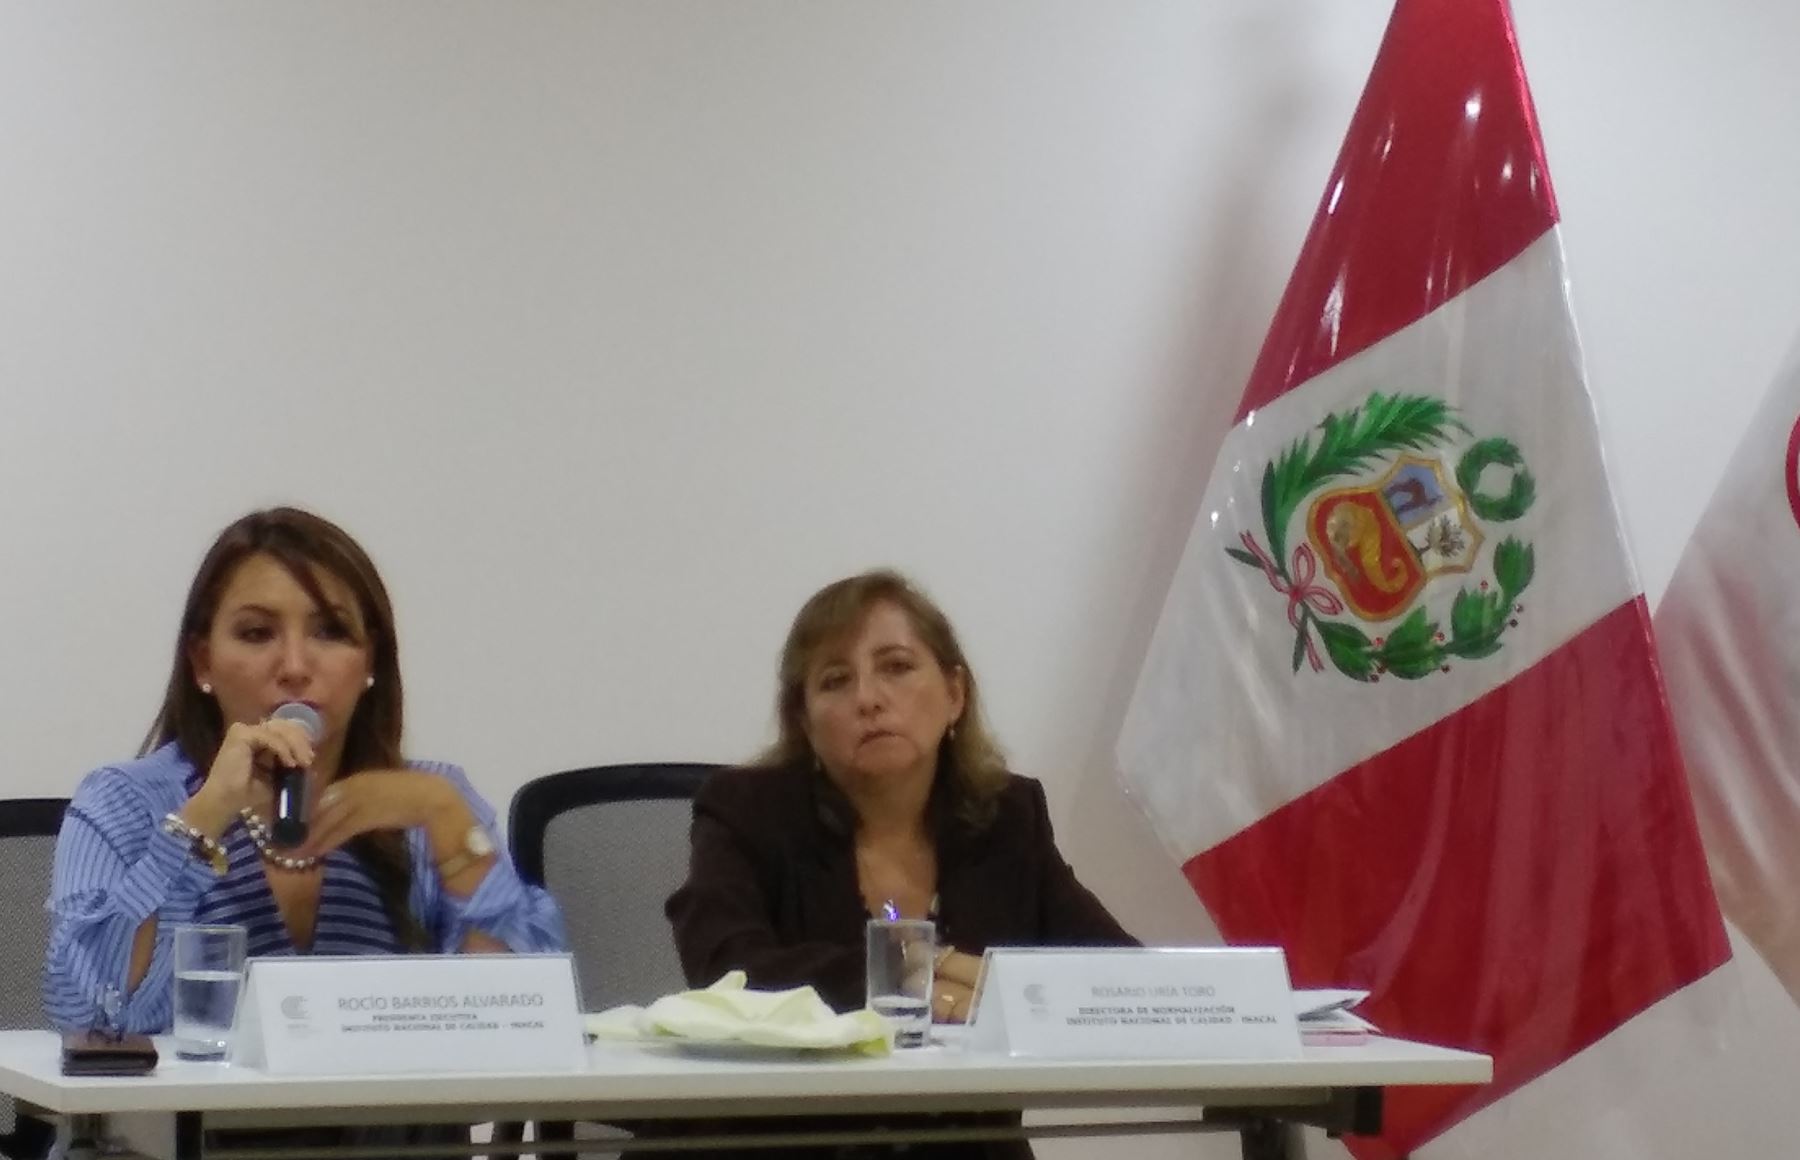 La presidenta ejecutiva del Inacal, Rocío Barrios anuncia la próxima implementación de la norma antisoborno ISO 37001, acompañada de la directora de Normalización del Inacal, Rosario Uria. Foto: Andina.